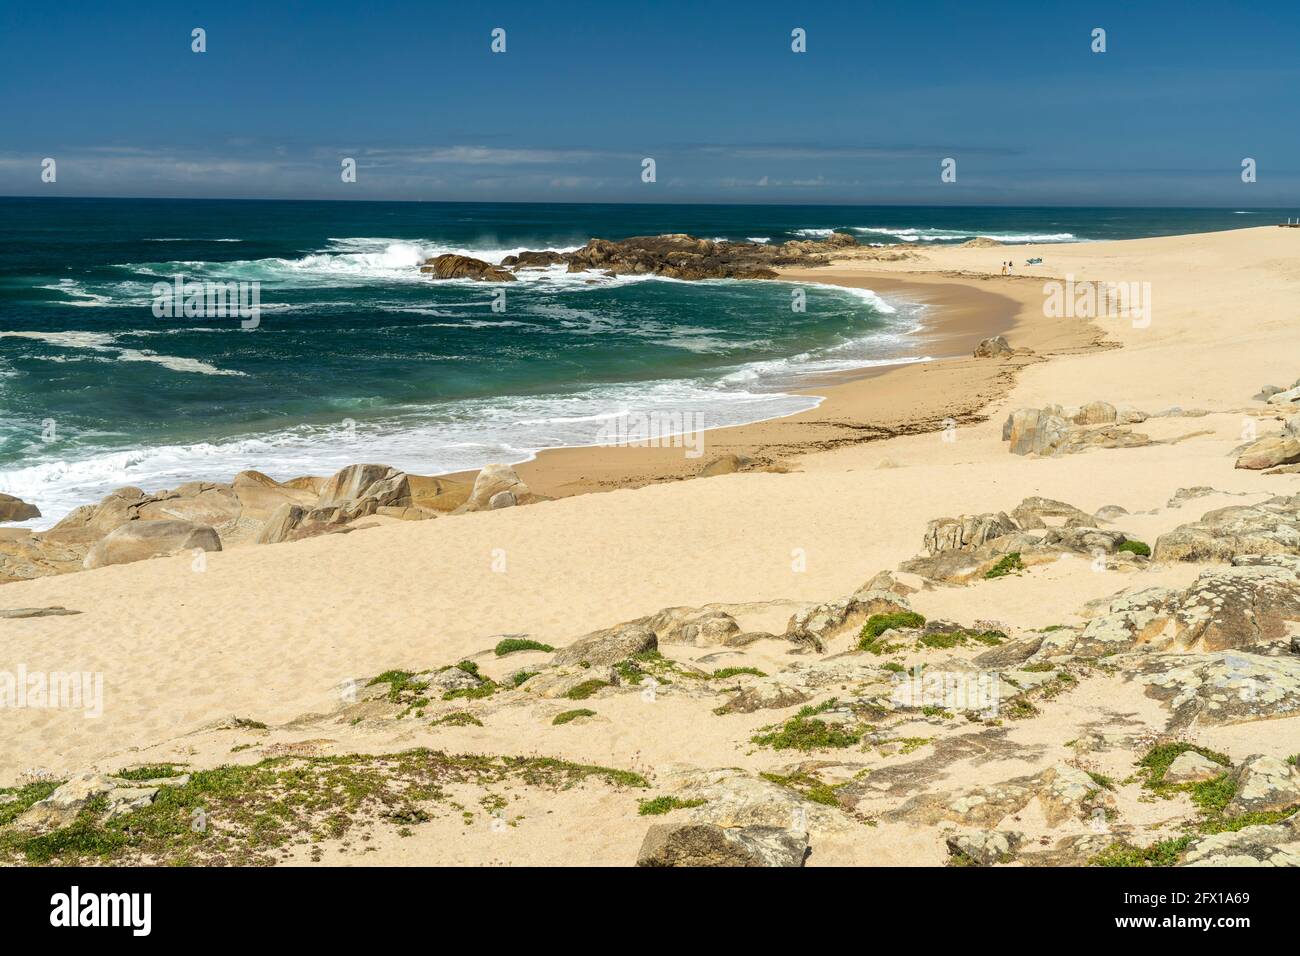 Der Strand Praia do Seca, Vila do Conde, Portugal, Europa   |  Praia do Seca beach, Vila do Conde, Portugal, Europe Stock Photo